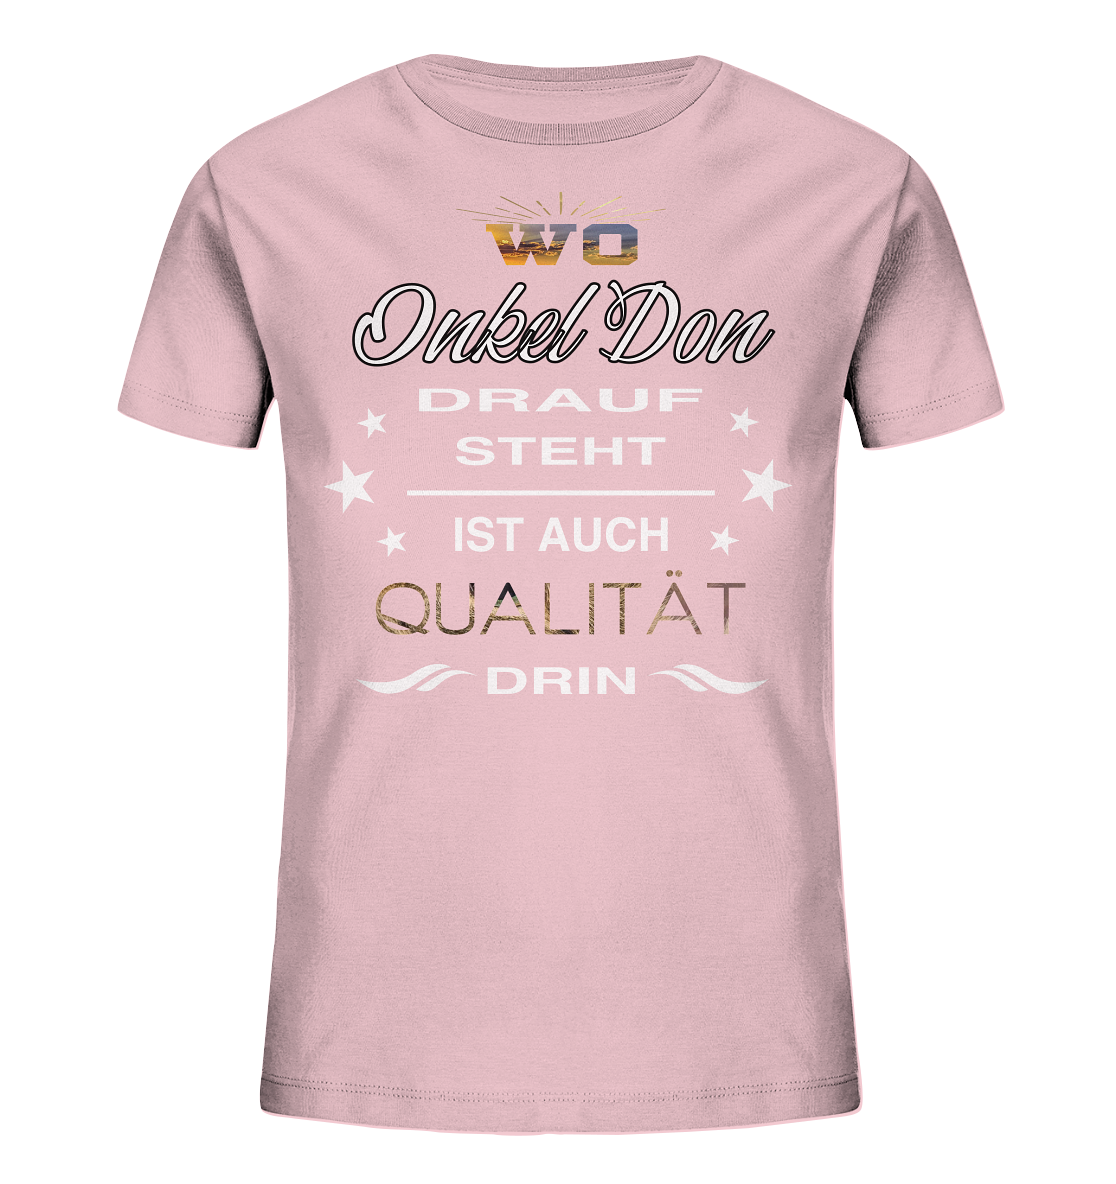 Qualität - Kids Bio-Baumwolle Shirt - Onkel Don